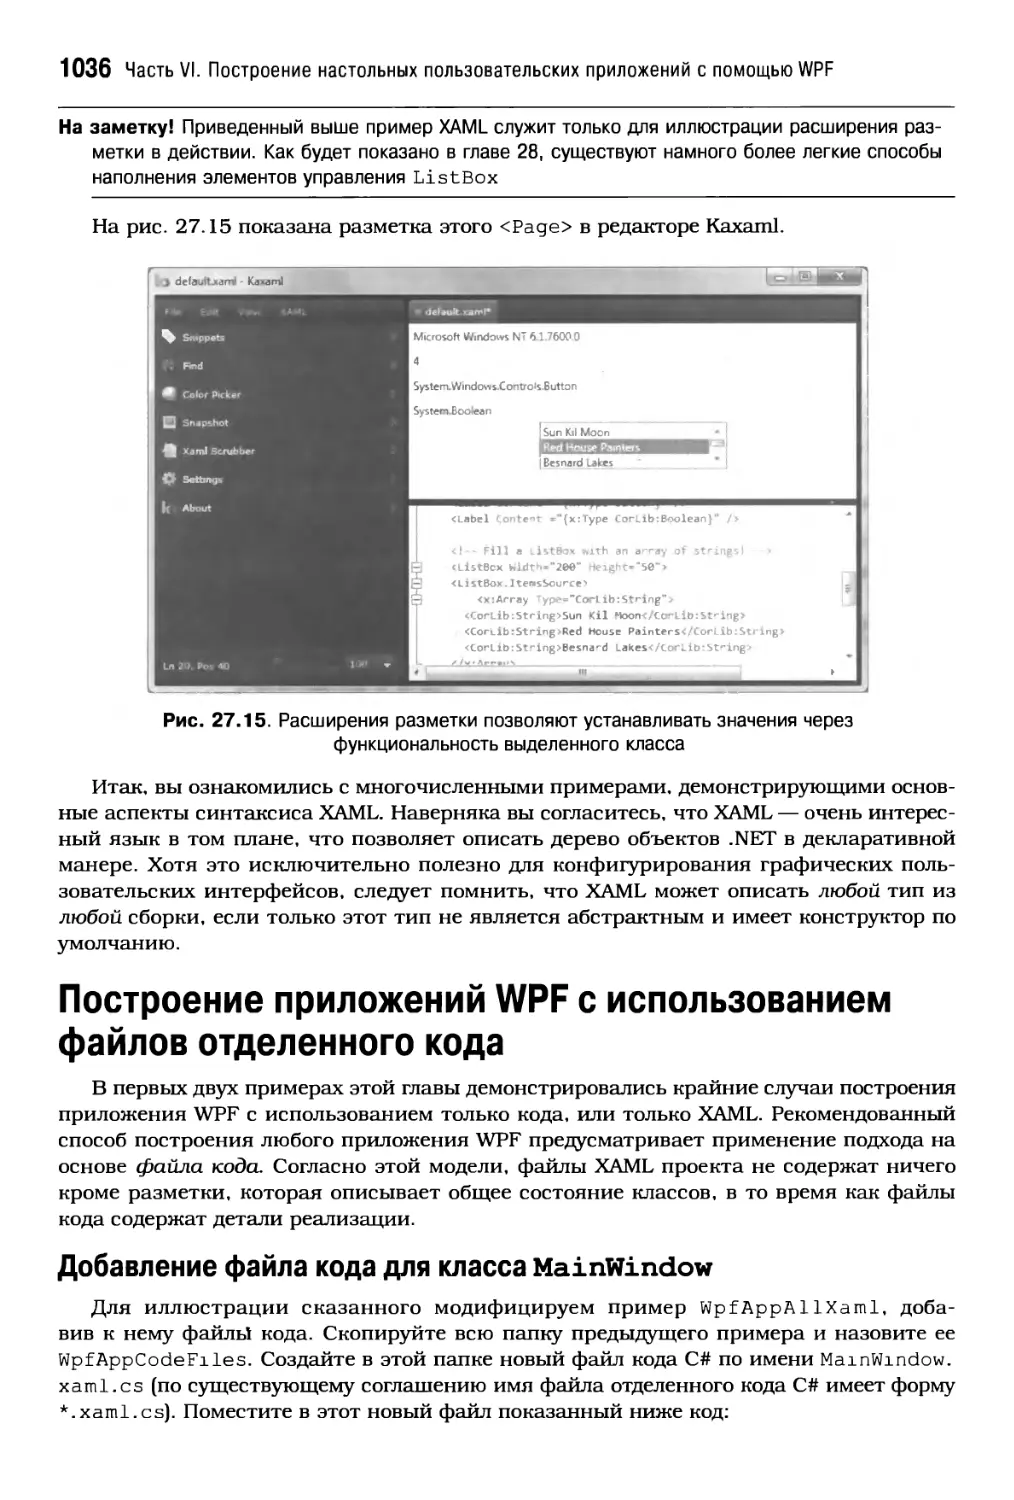 Построение приложений WPF с использованием файлов отделенного кода